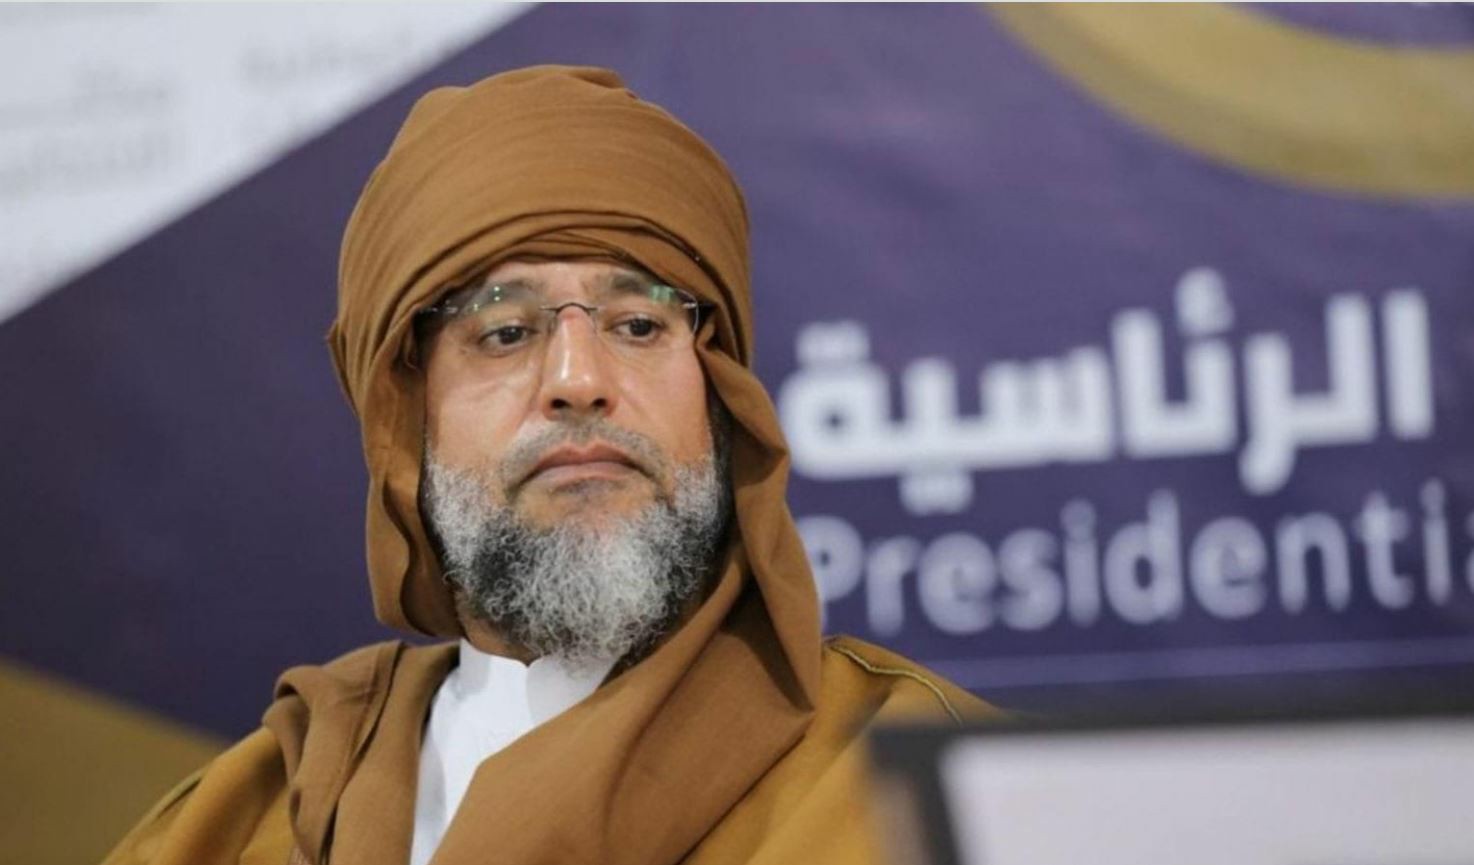 سيف الإسلام القذافي يعود إلى قائمة مرشحي الانتخابات في ليبيا